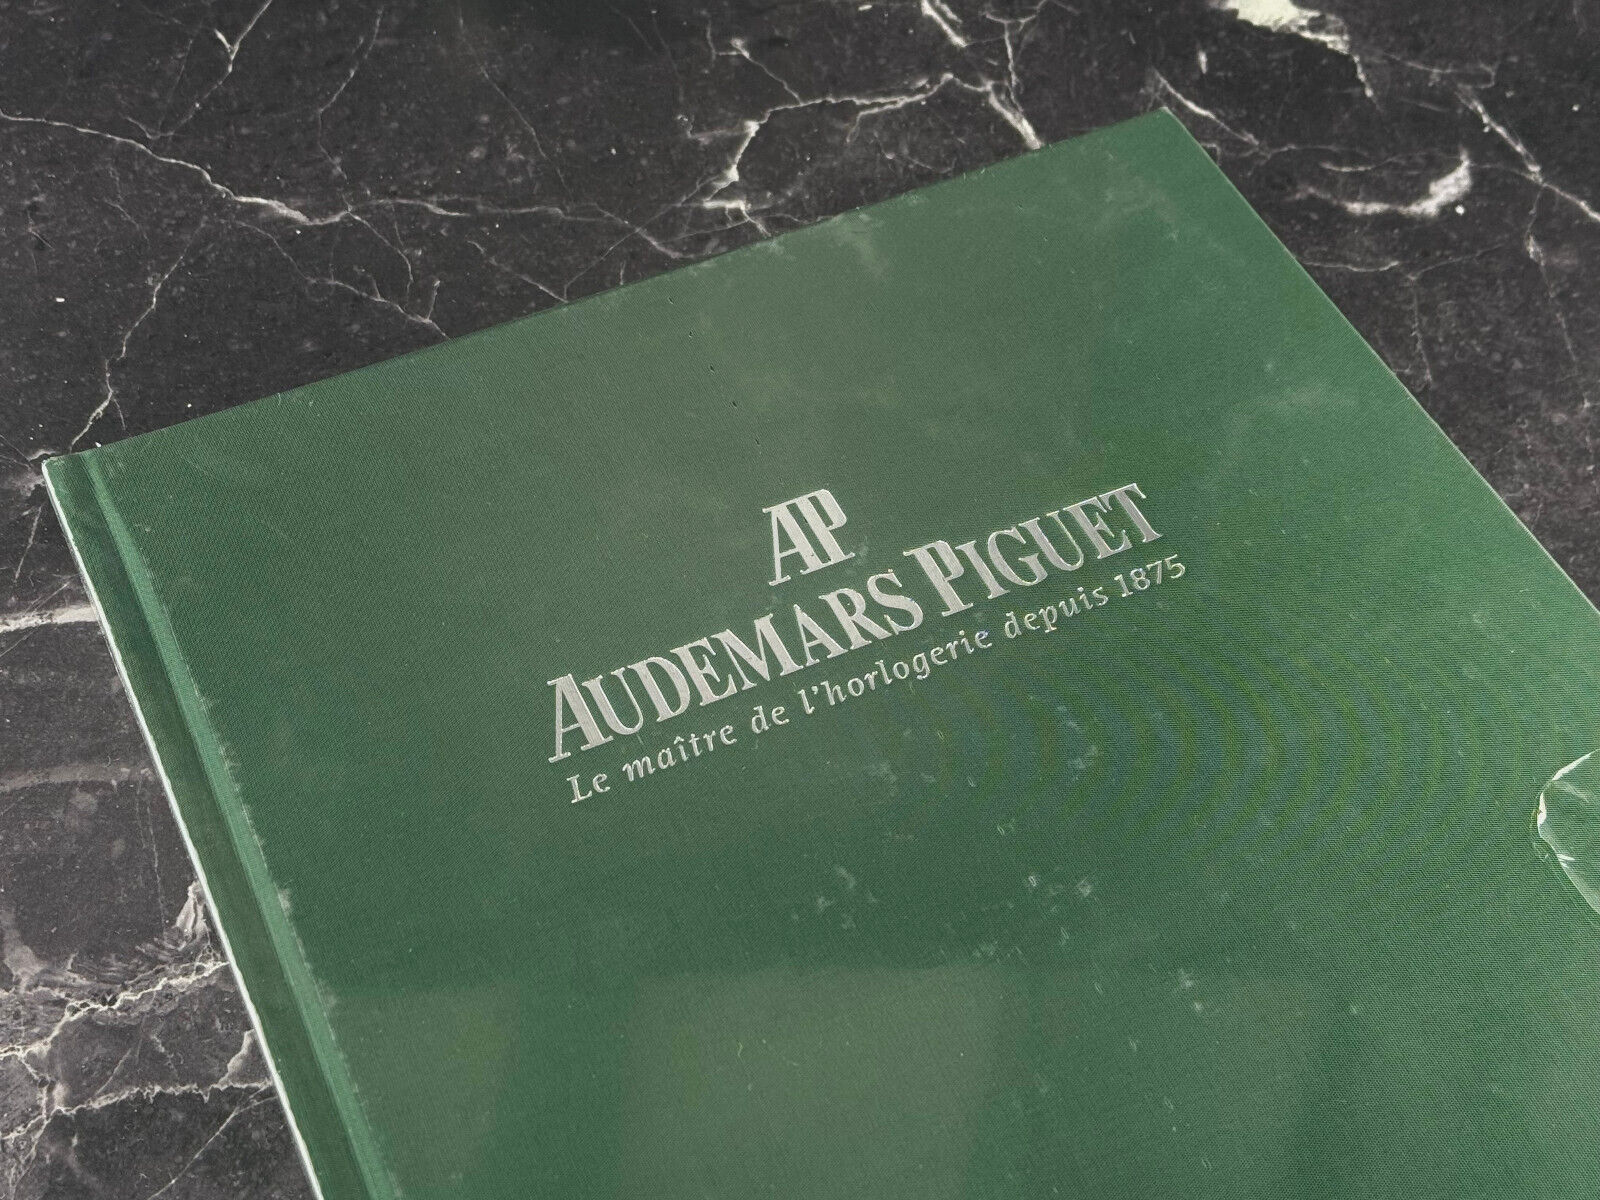 Audemars Piguet Flammarion catalog 